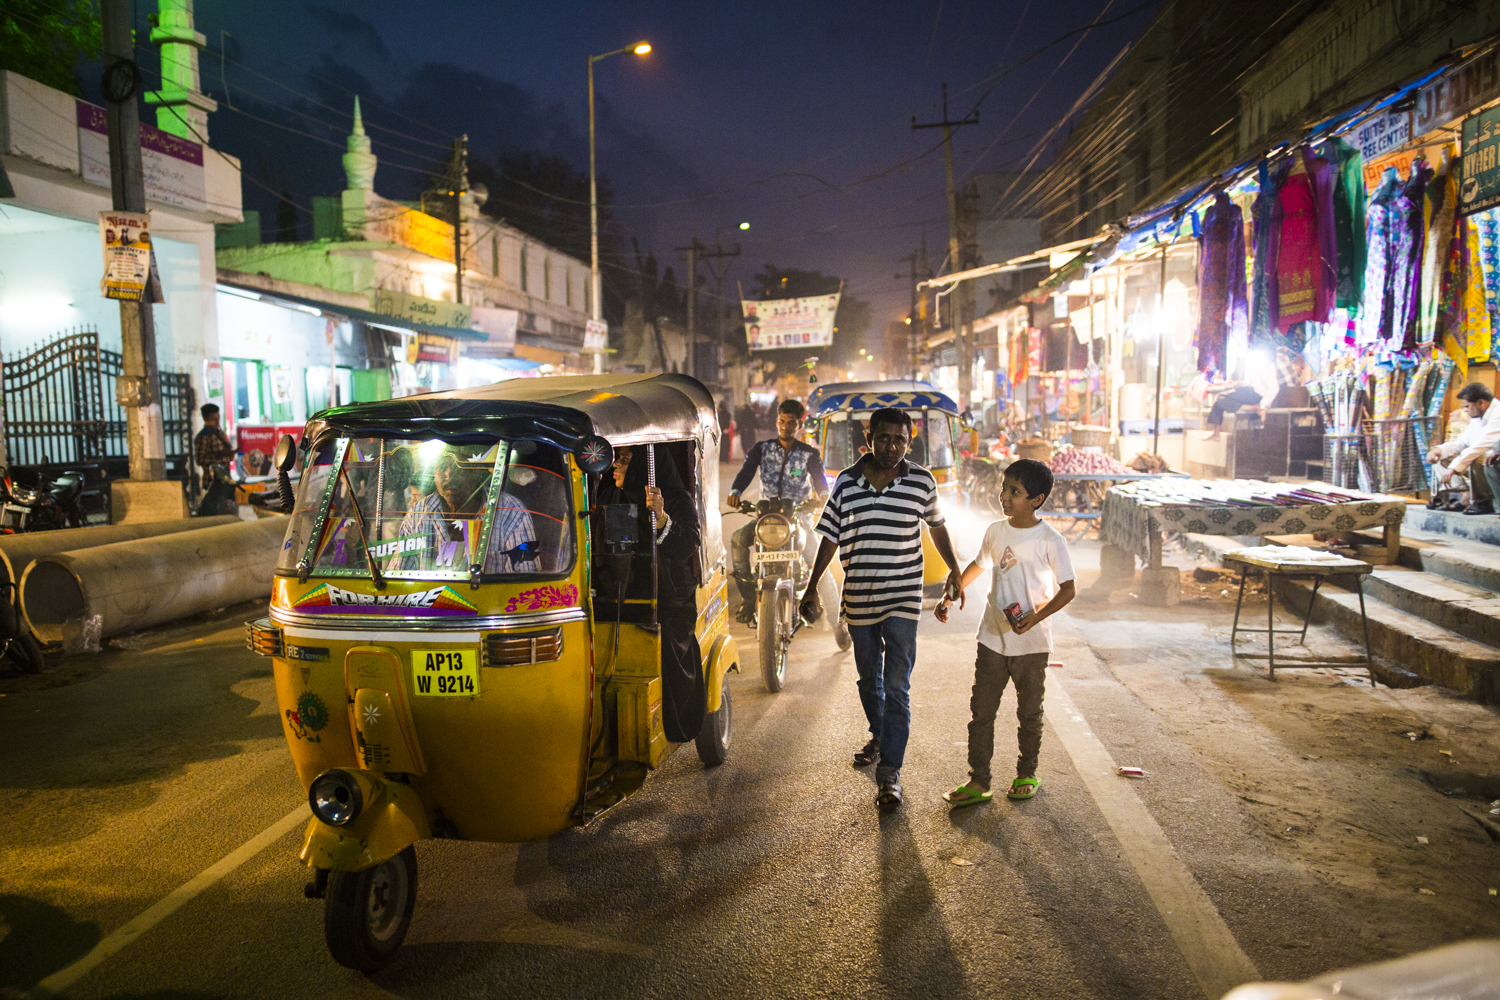  Rush Hour in Hyderabad, India&nbsp; 